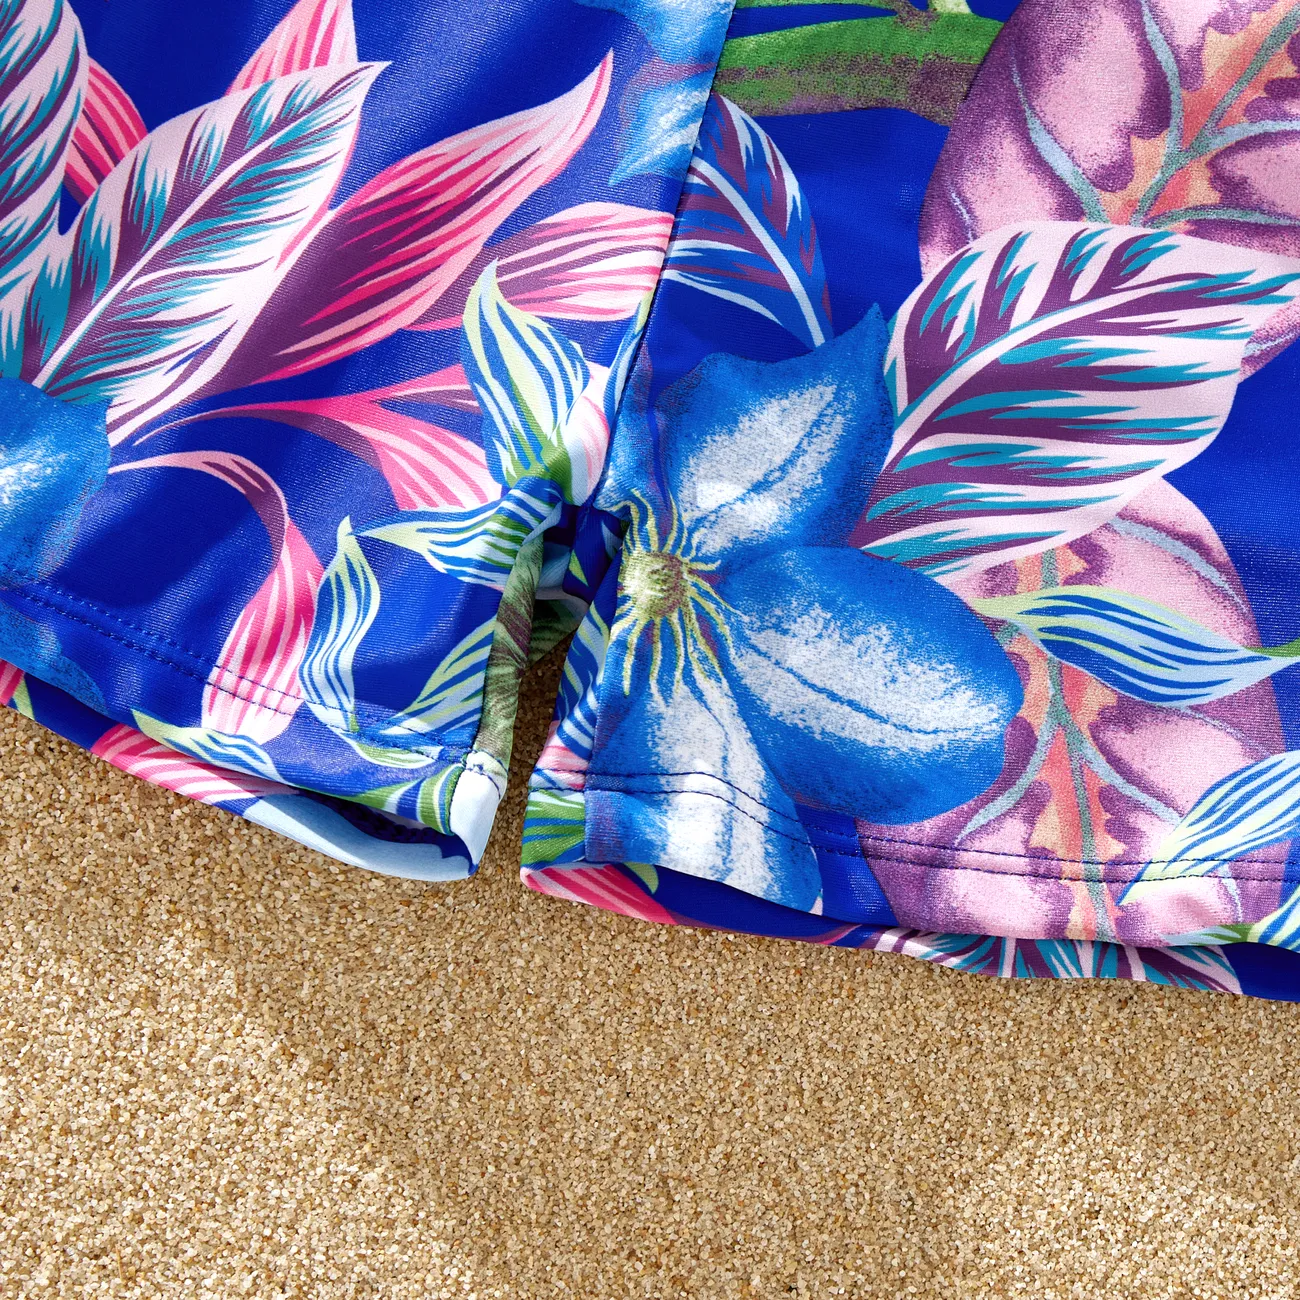 Familien-Looks Tropische Pflanzen und Blumen Familien-Outfits Badeanzüge blau big image 1